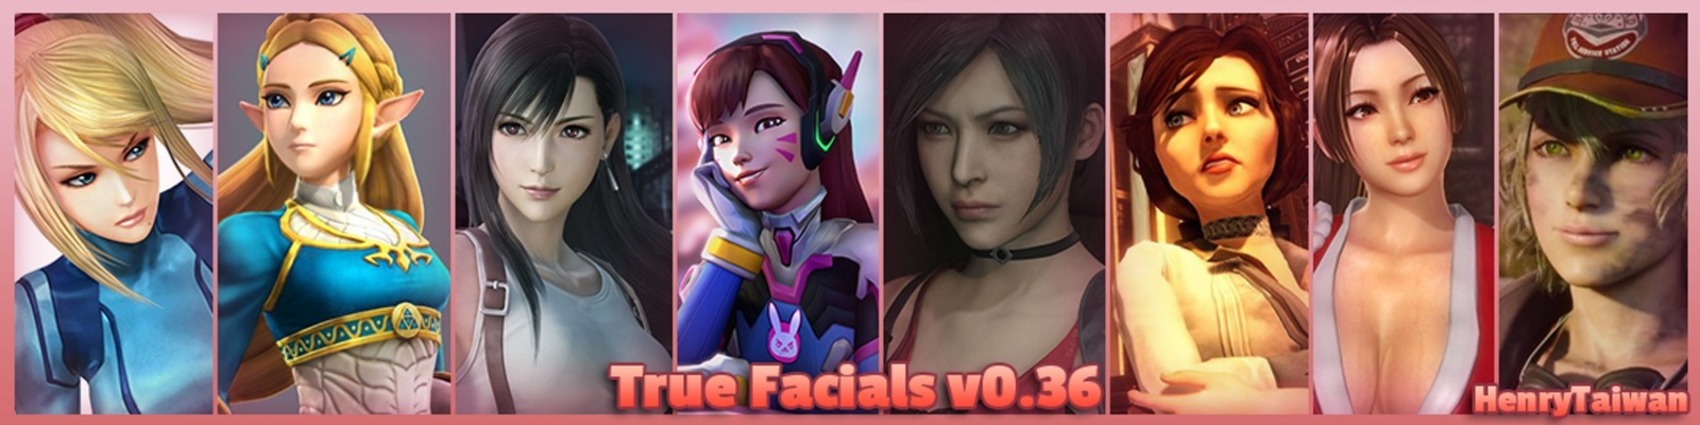 True Facials 0.42b Â» Download Hentai Games